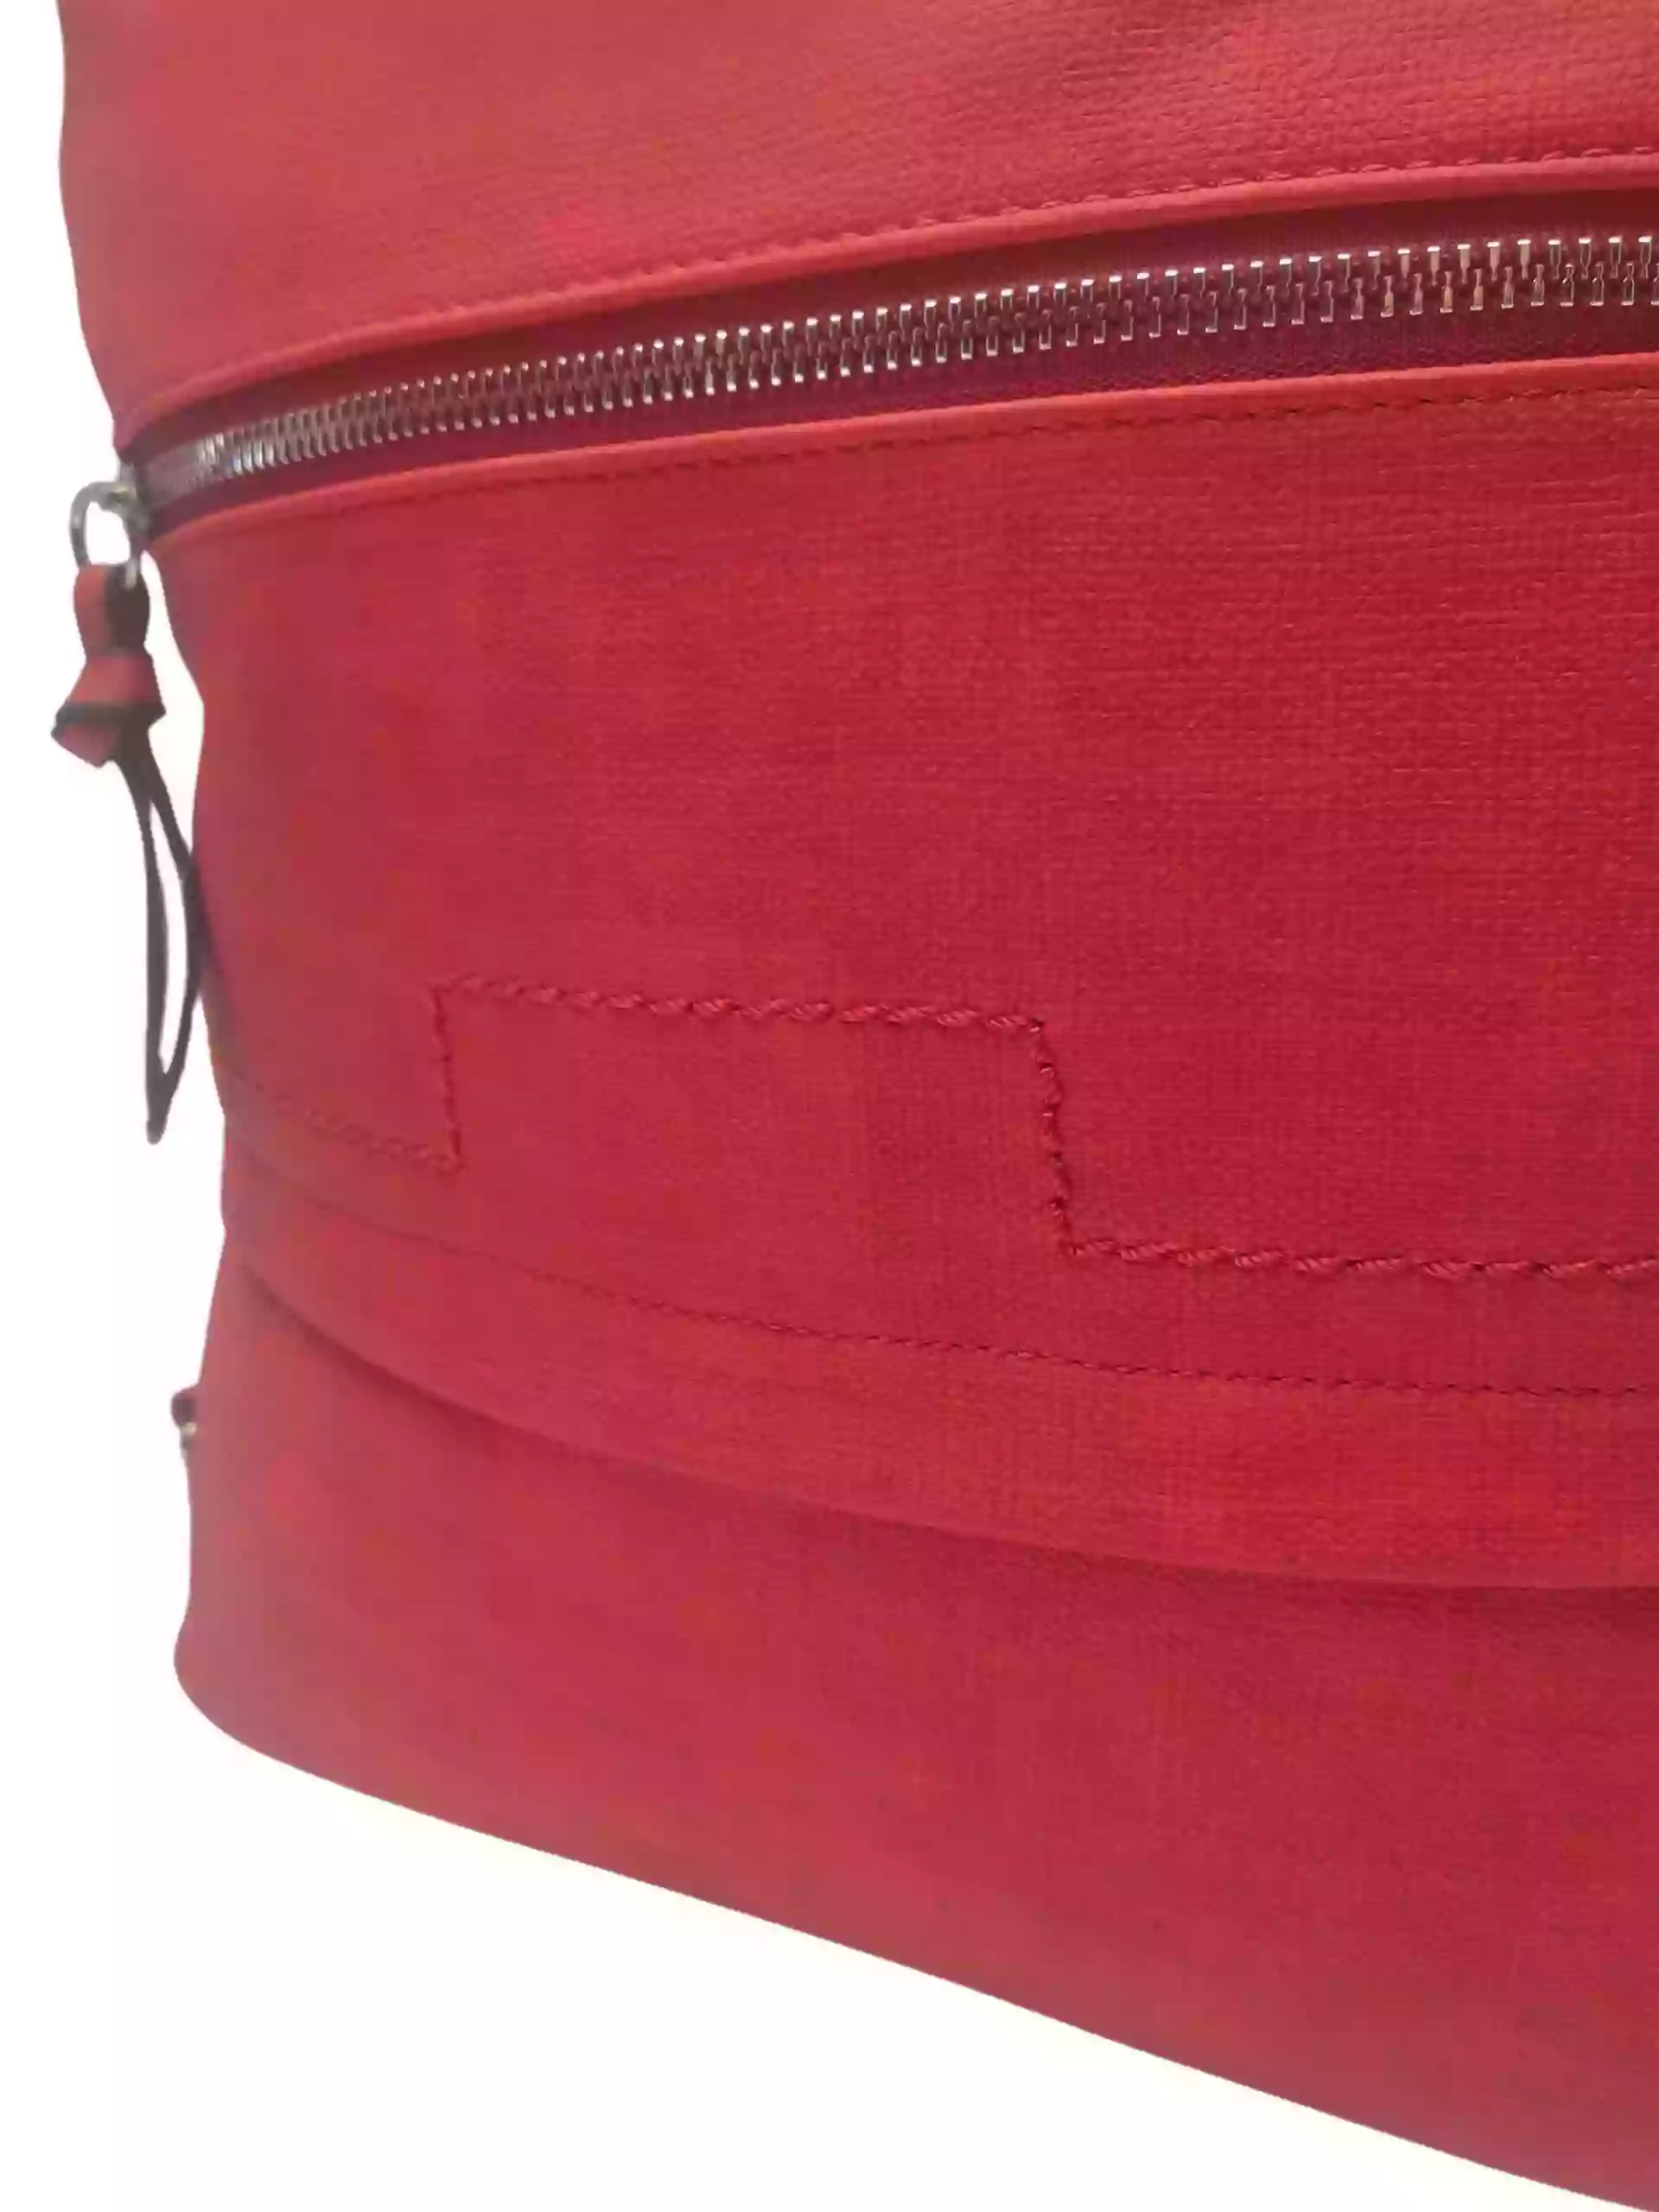 Střední červený kabelko-batoh 2v1 s praktickou kapsou, Tapple, H190062, detail kabelko-batohu